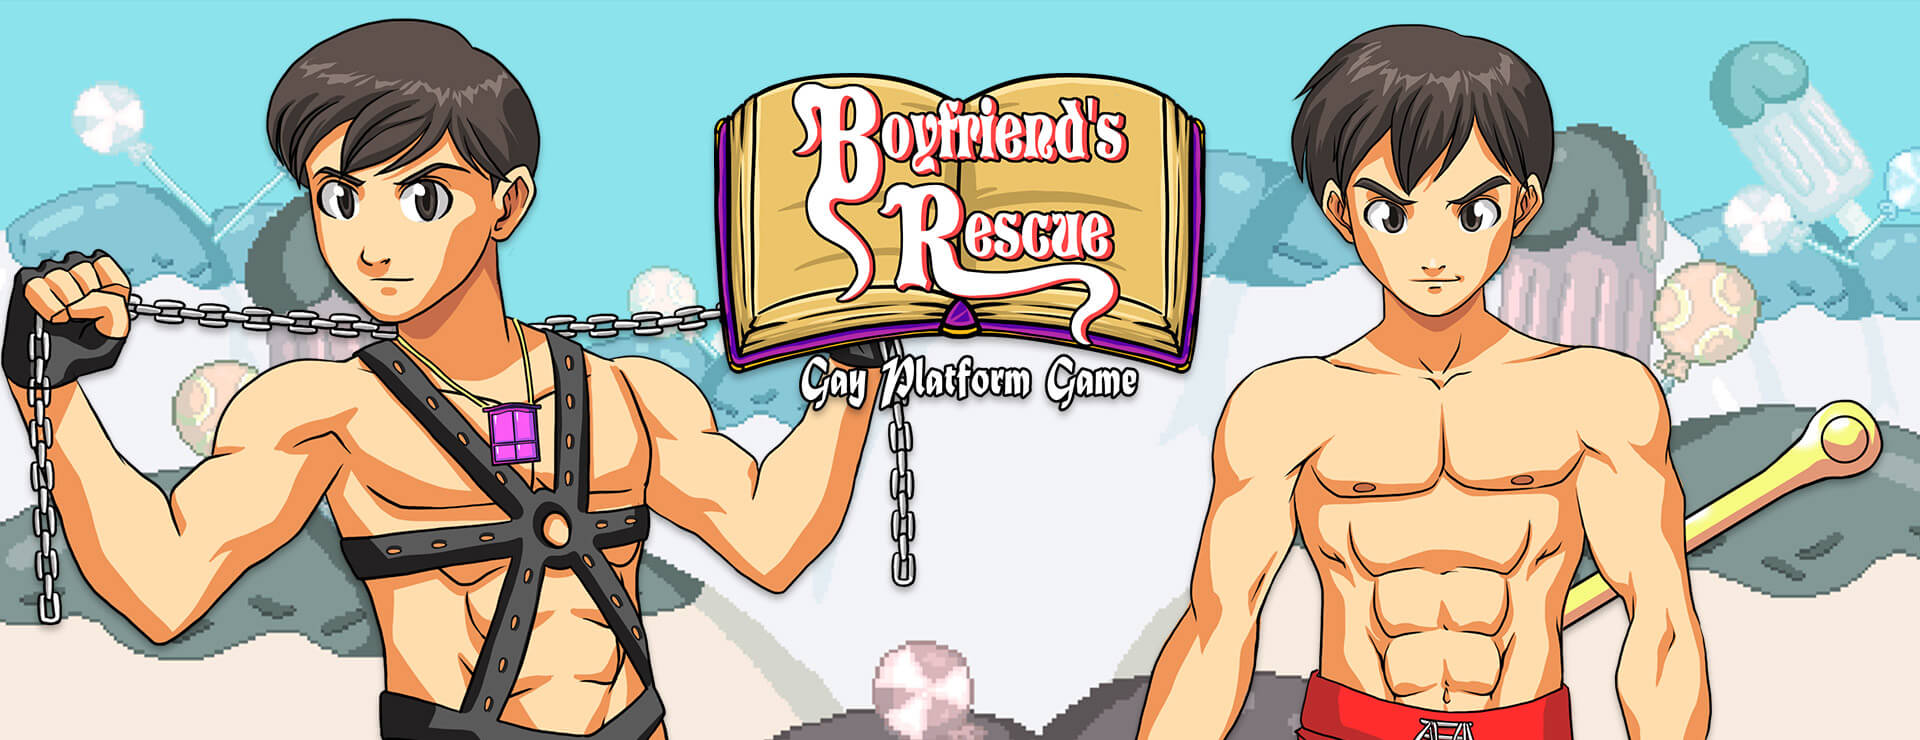 Boyfriend's Rescue - Action Adventure Spiel